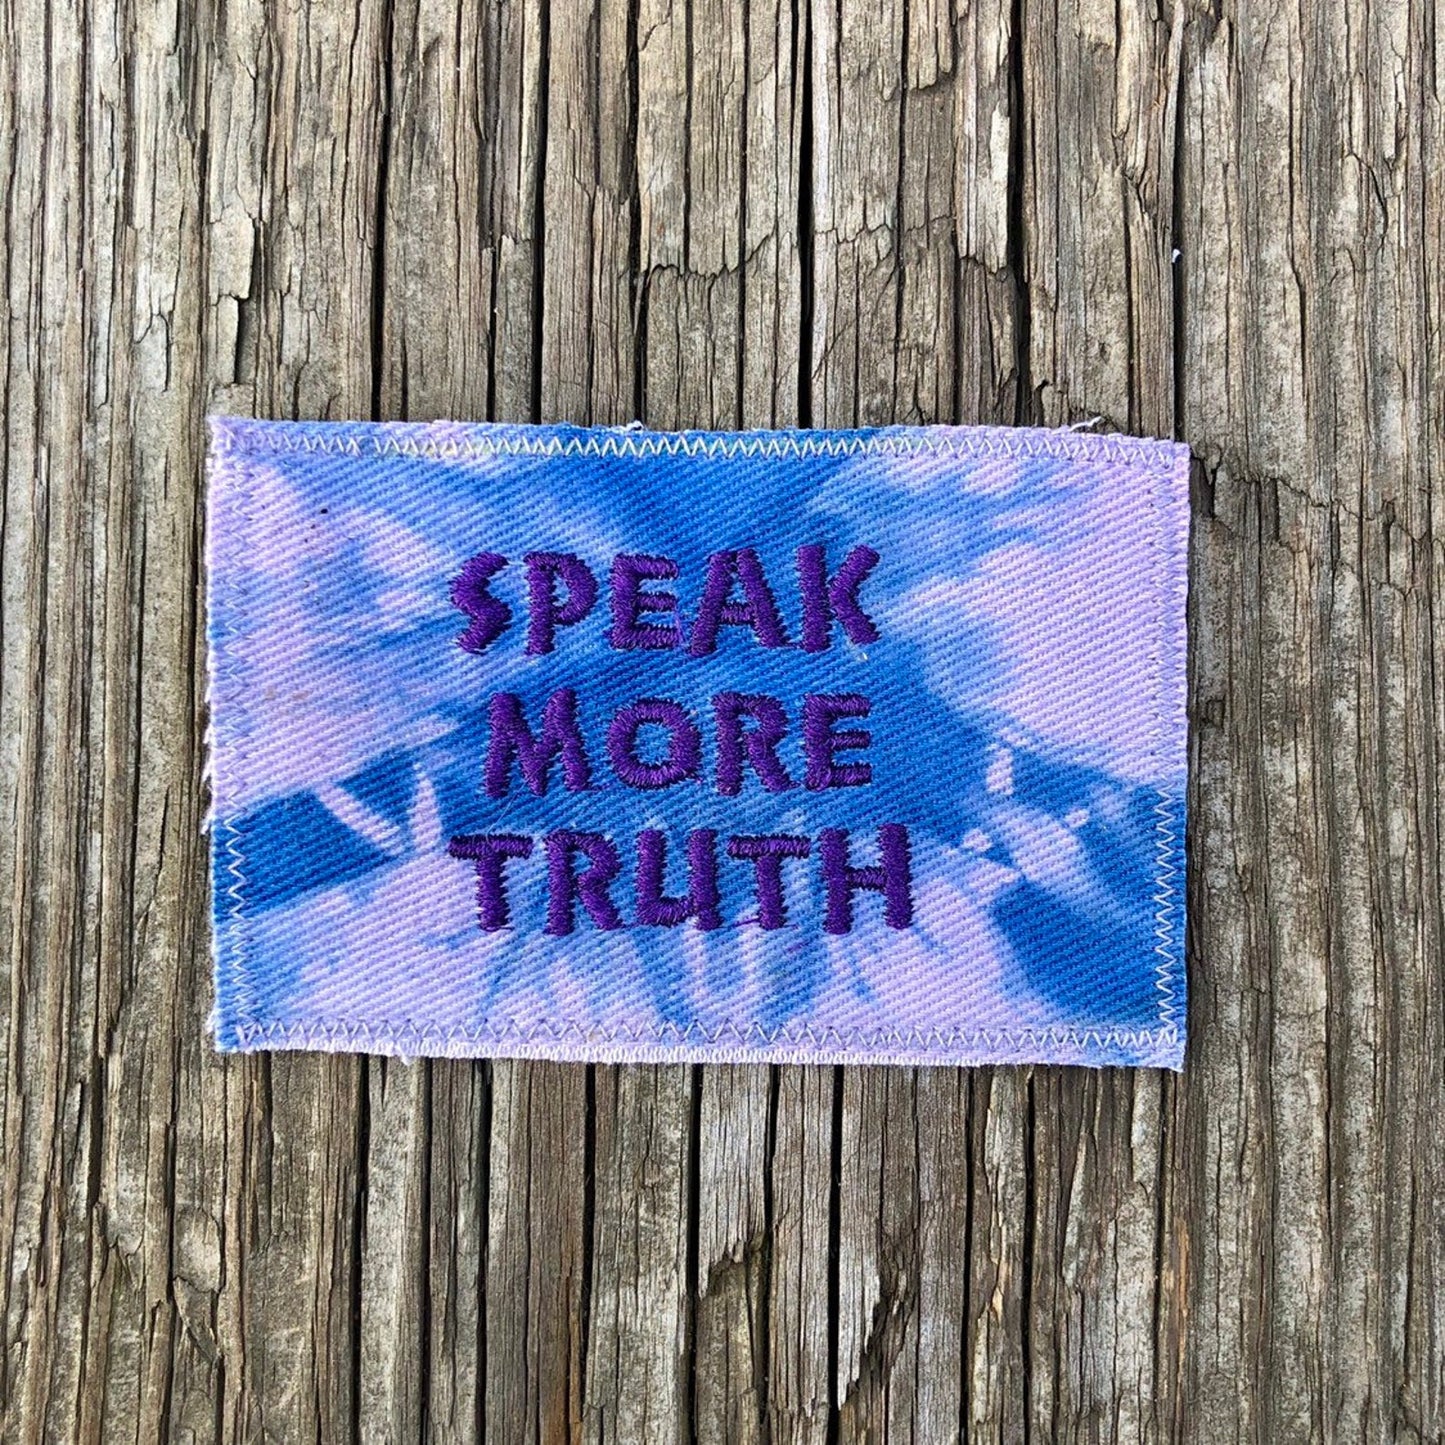 Speak Truth! Tie Dye Handmade Canvas Patch